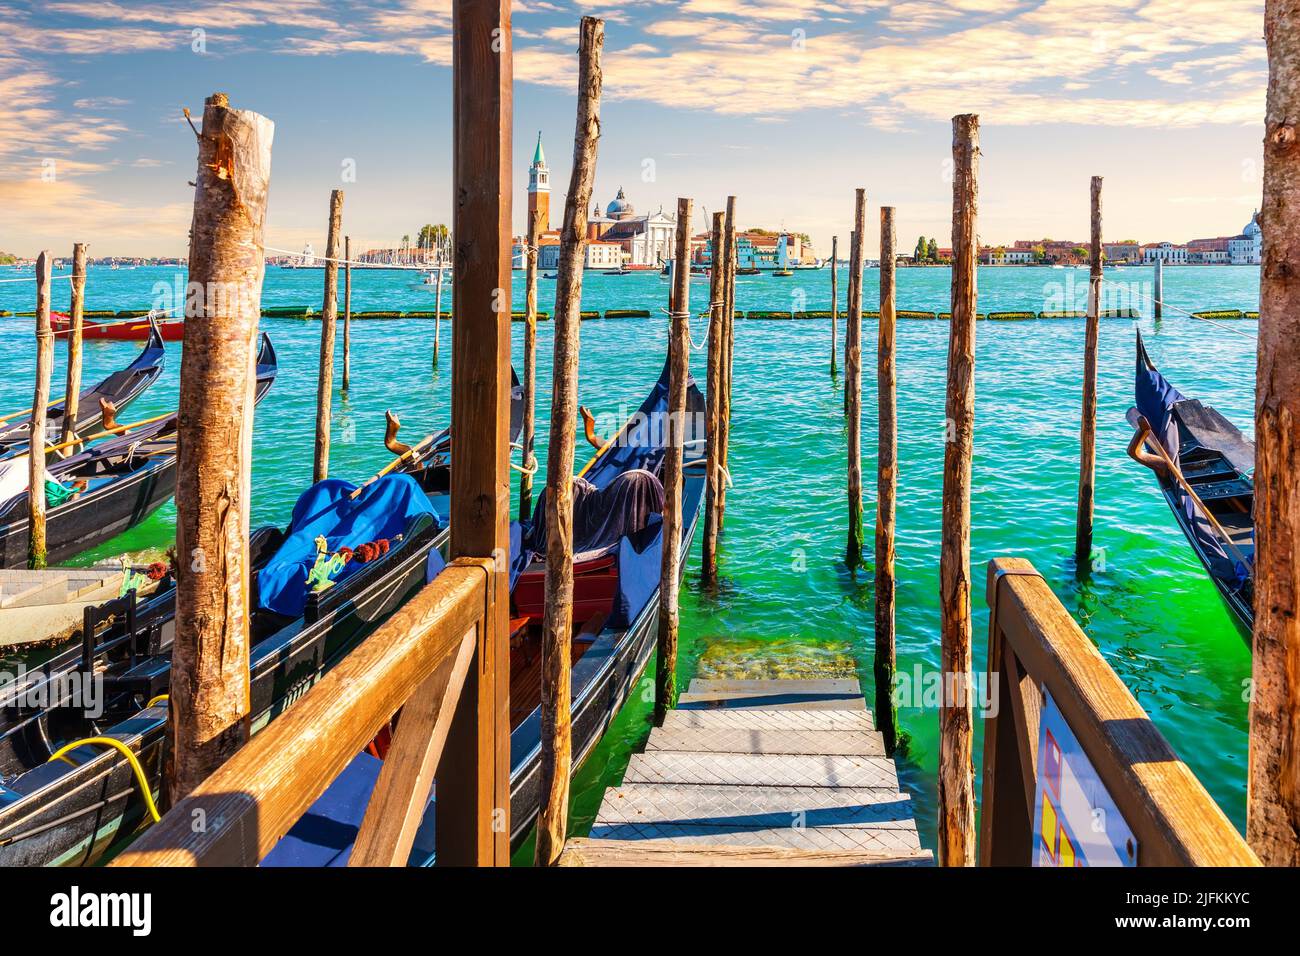 Gondolas moored in the Grand Canal in front of San Giorgio Maggiore Island, Venice, Italy. Stock Photo